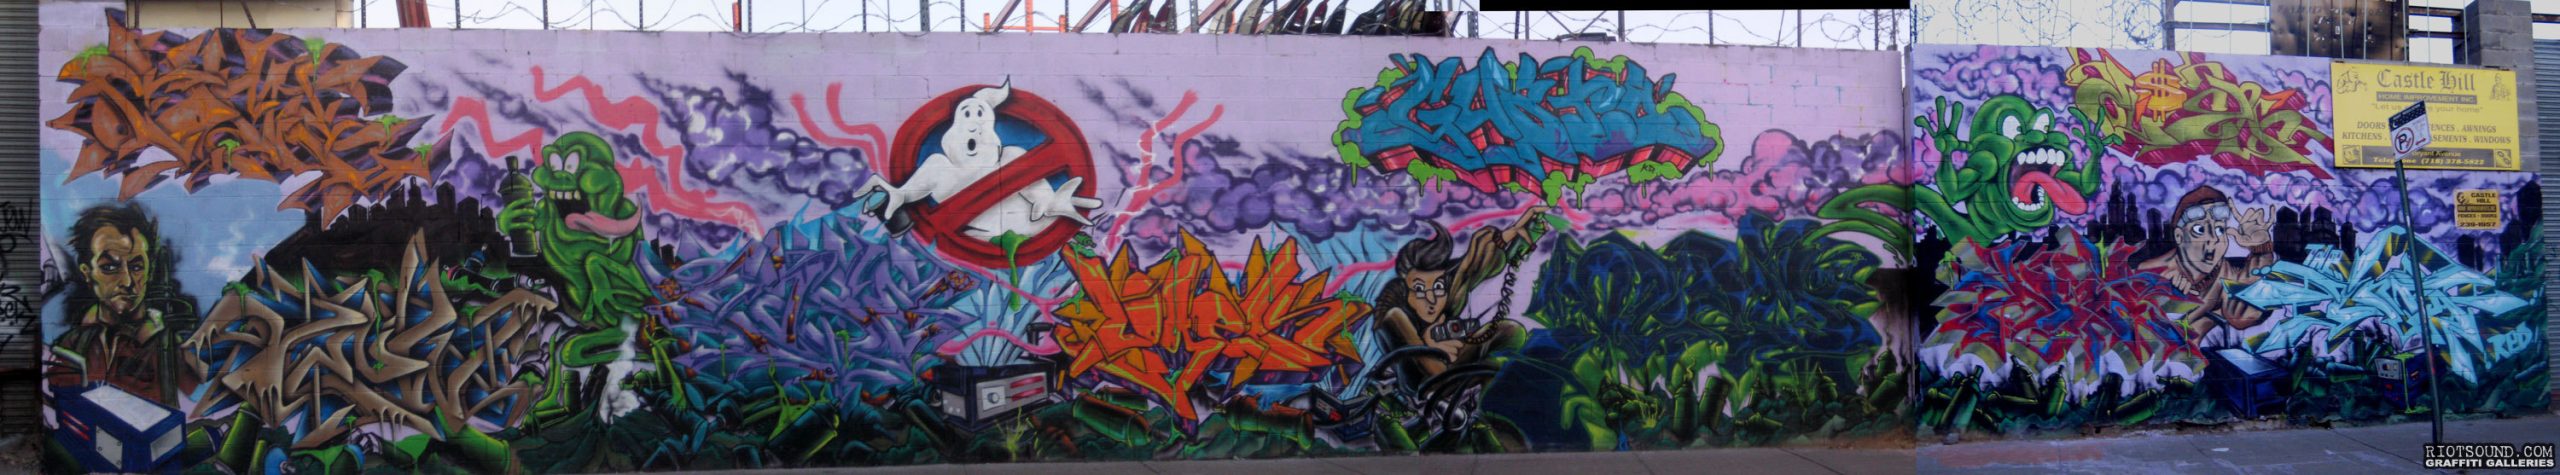 Ghostbusters Graffiti Mural